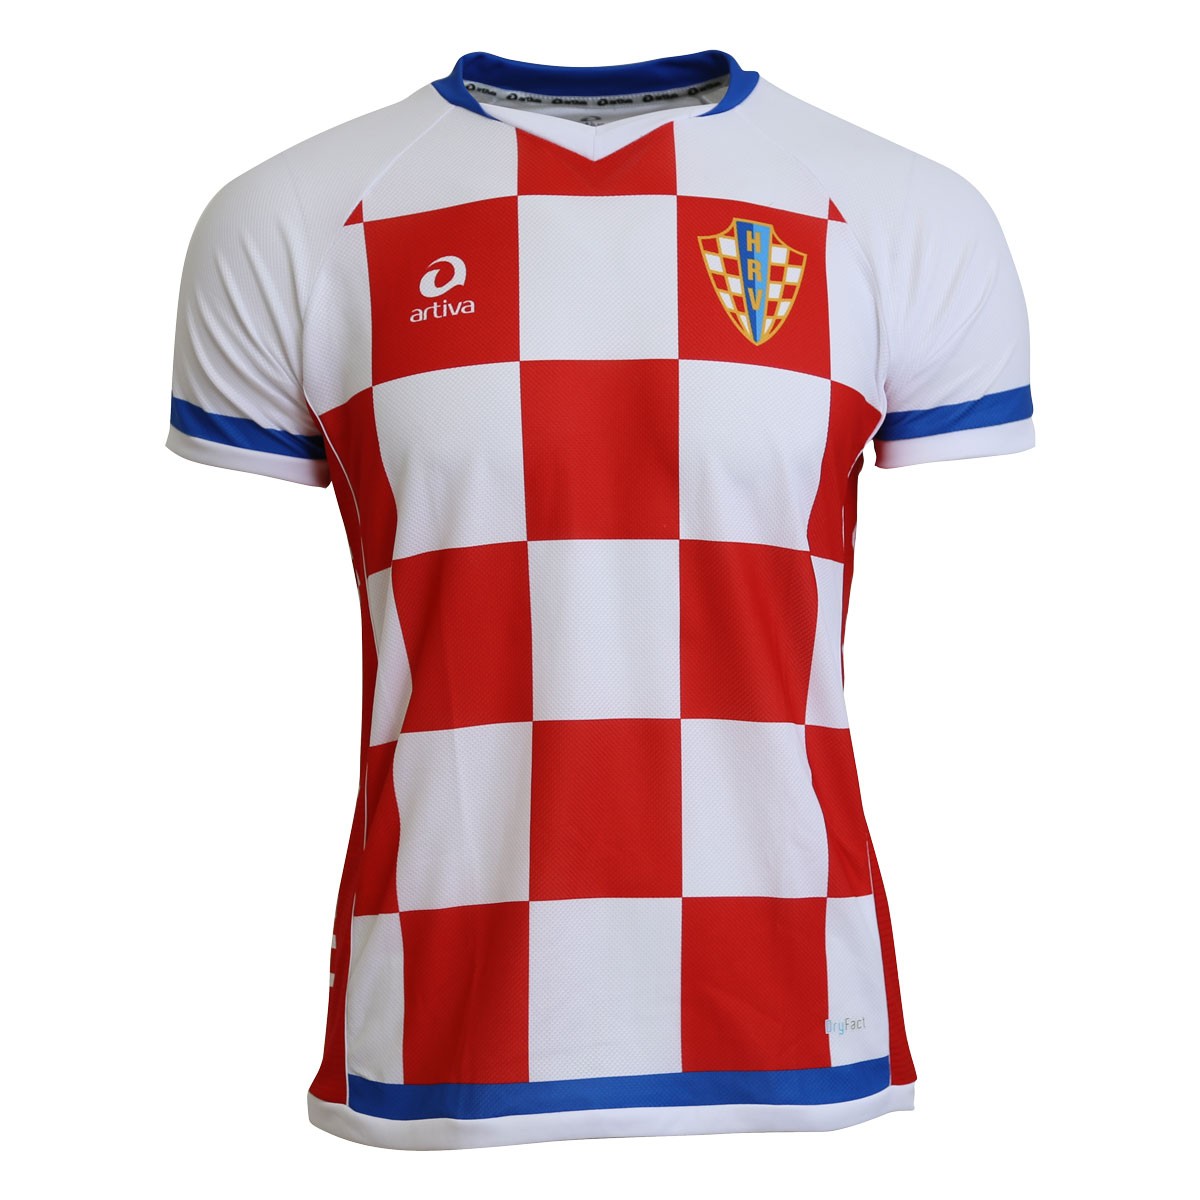 Kroatien EM 2020 Fanartikel Fanshirt Fußball Fan Herren Männer T-Shirt Trikot